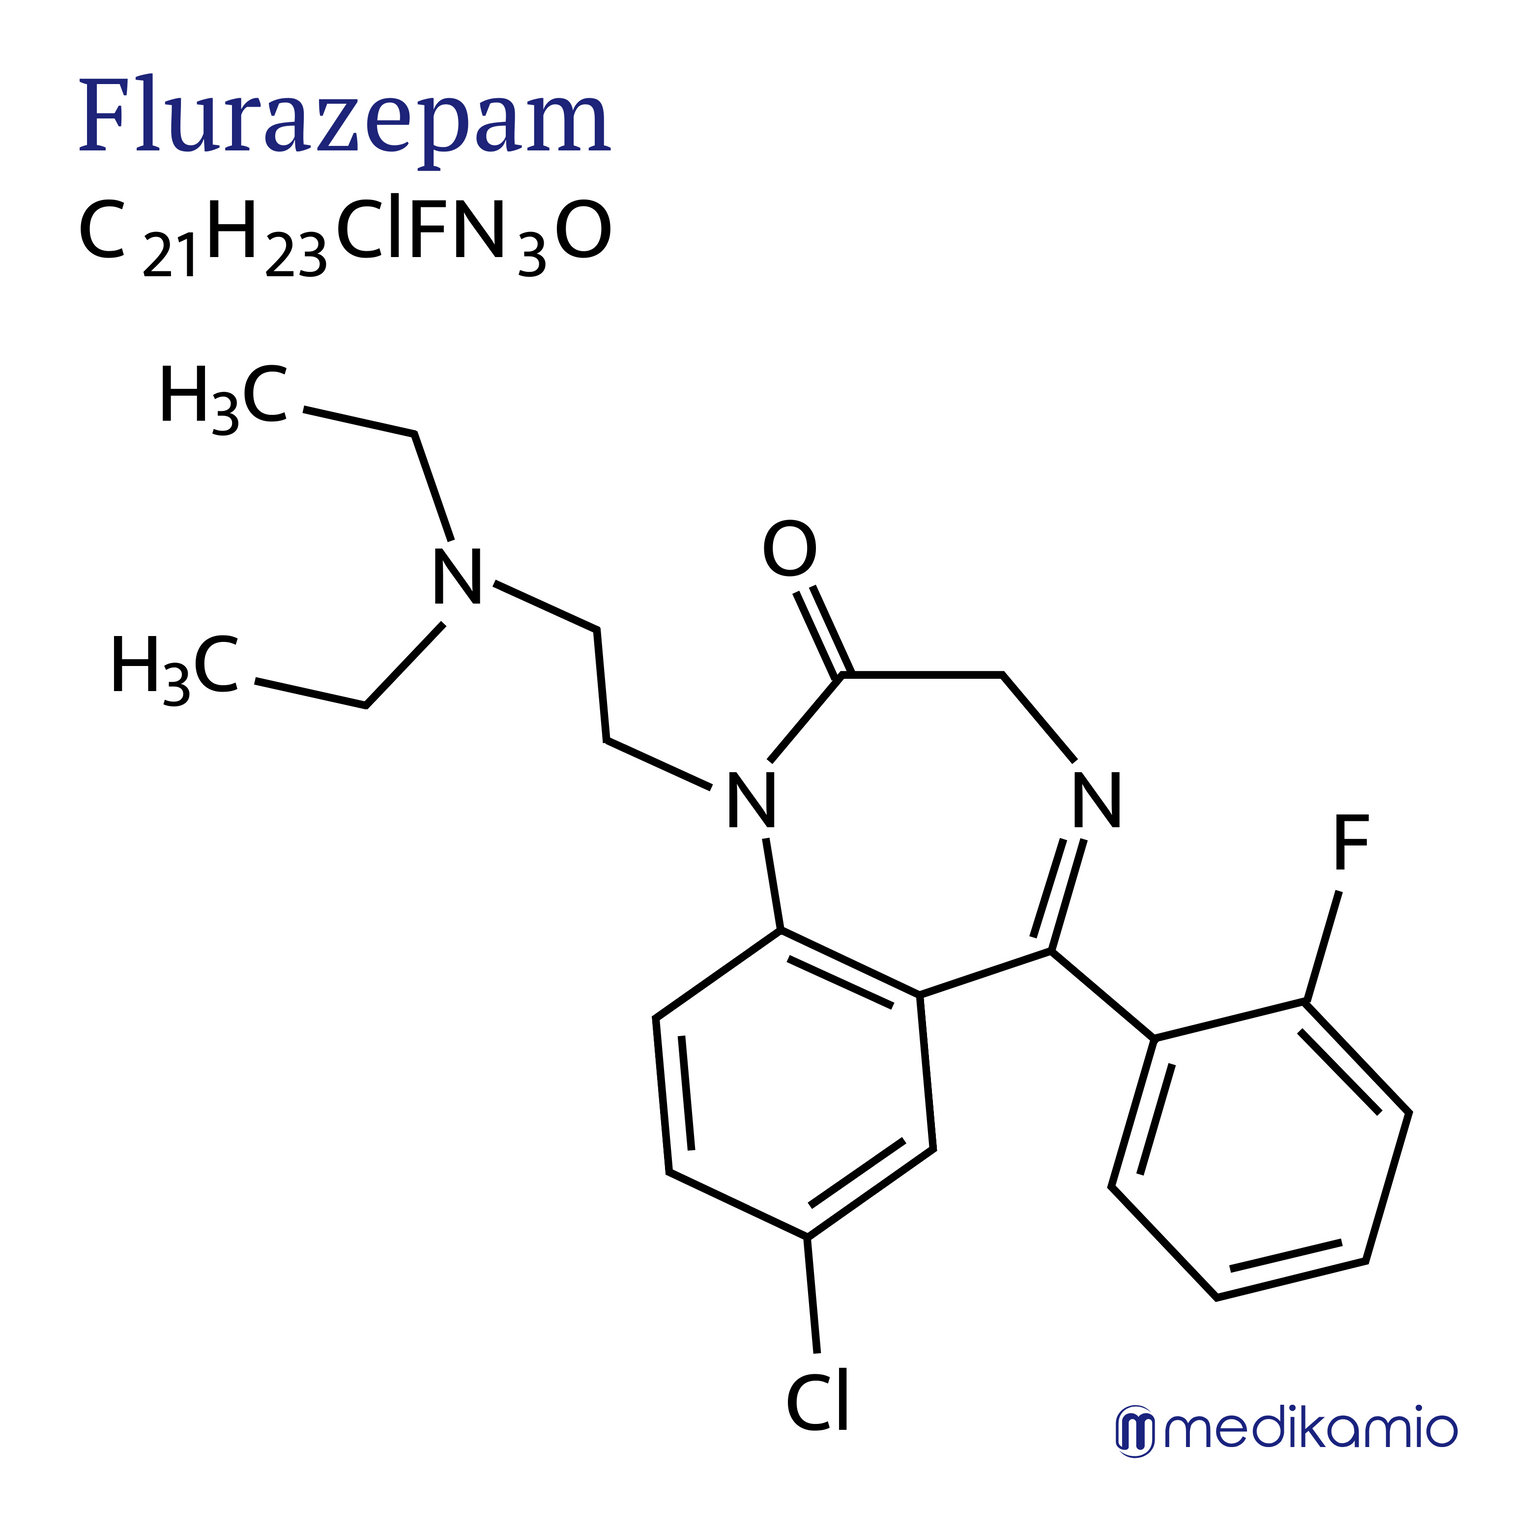 Fórmula estructural gráfica de la sustancia activa flurazepam